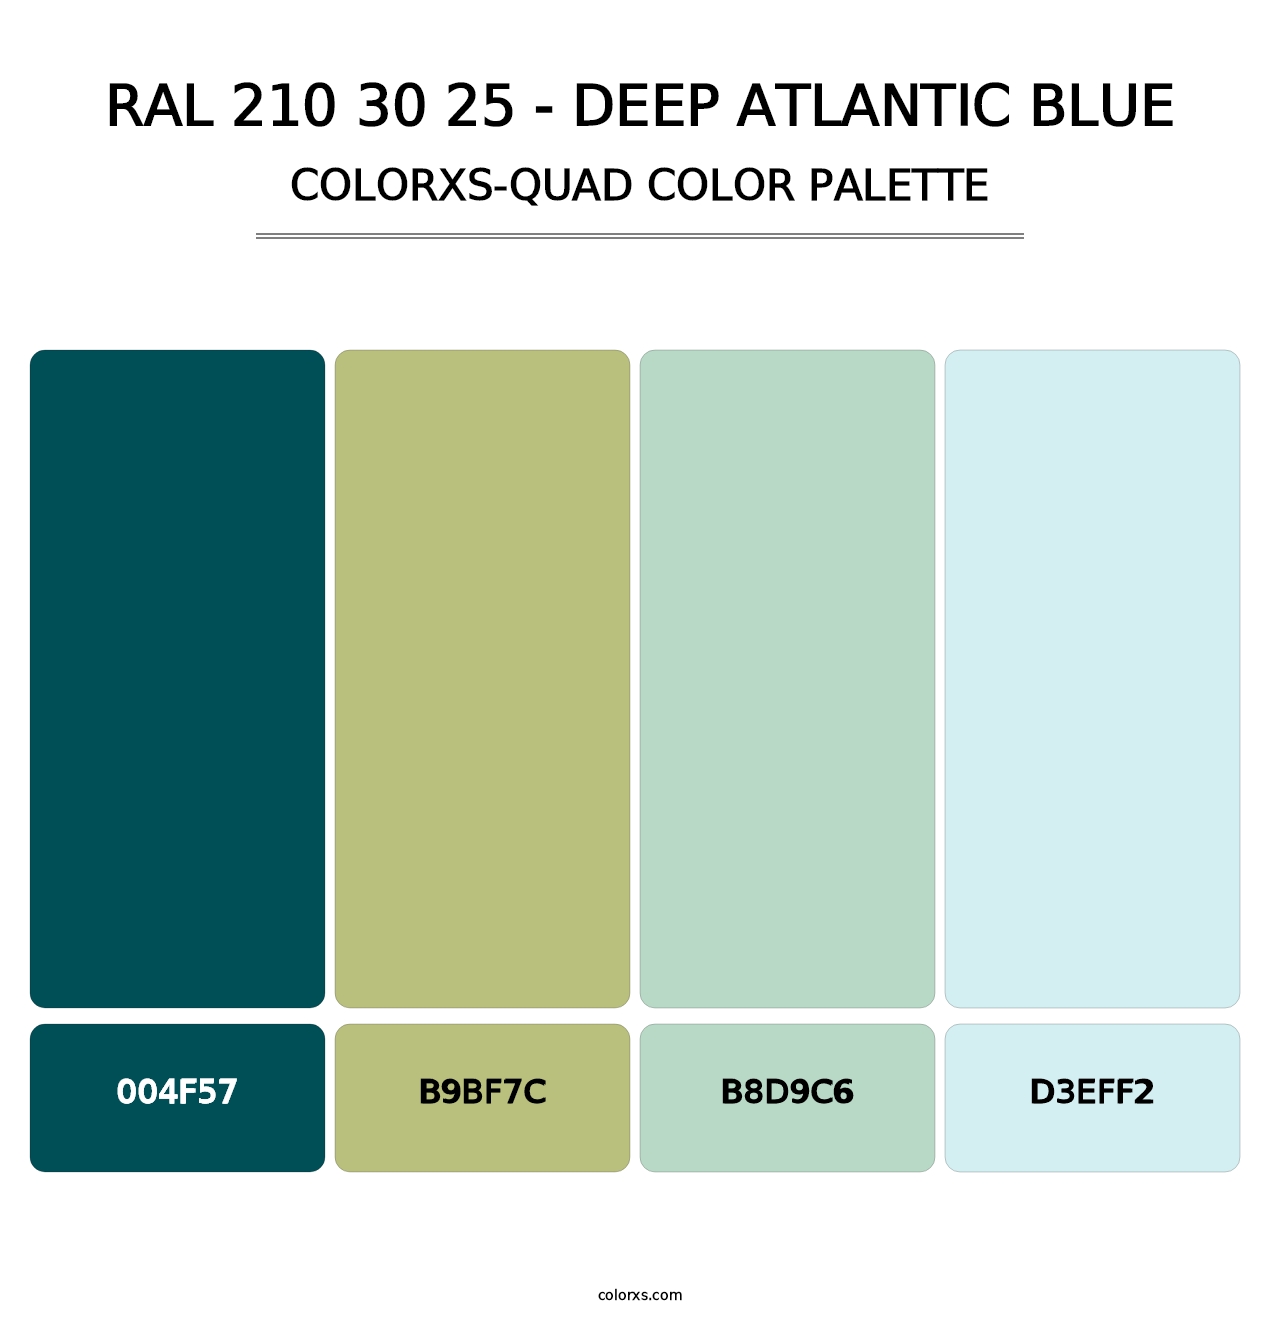 RAL 210 30 25 - Deep Atlantic Blue - Colorxs Quad Palette